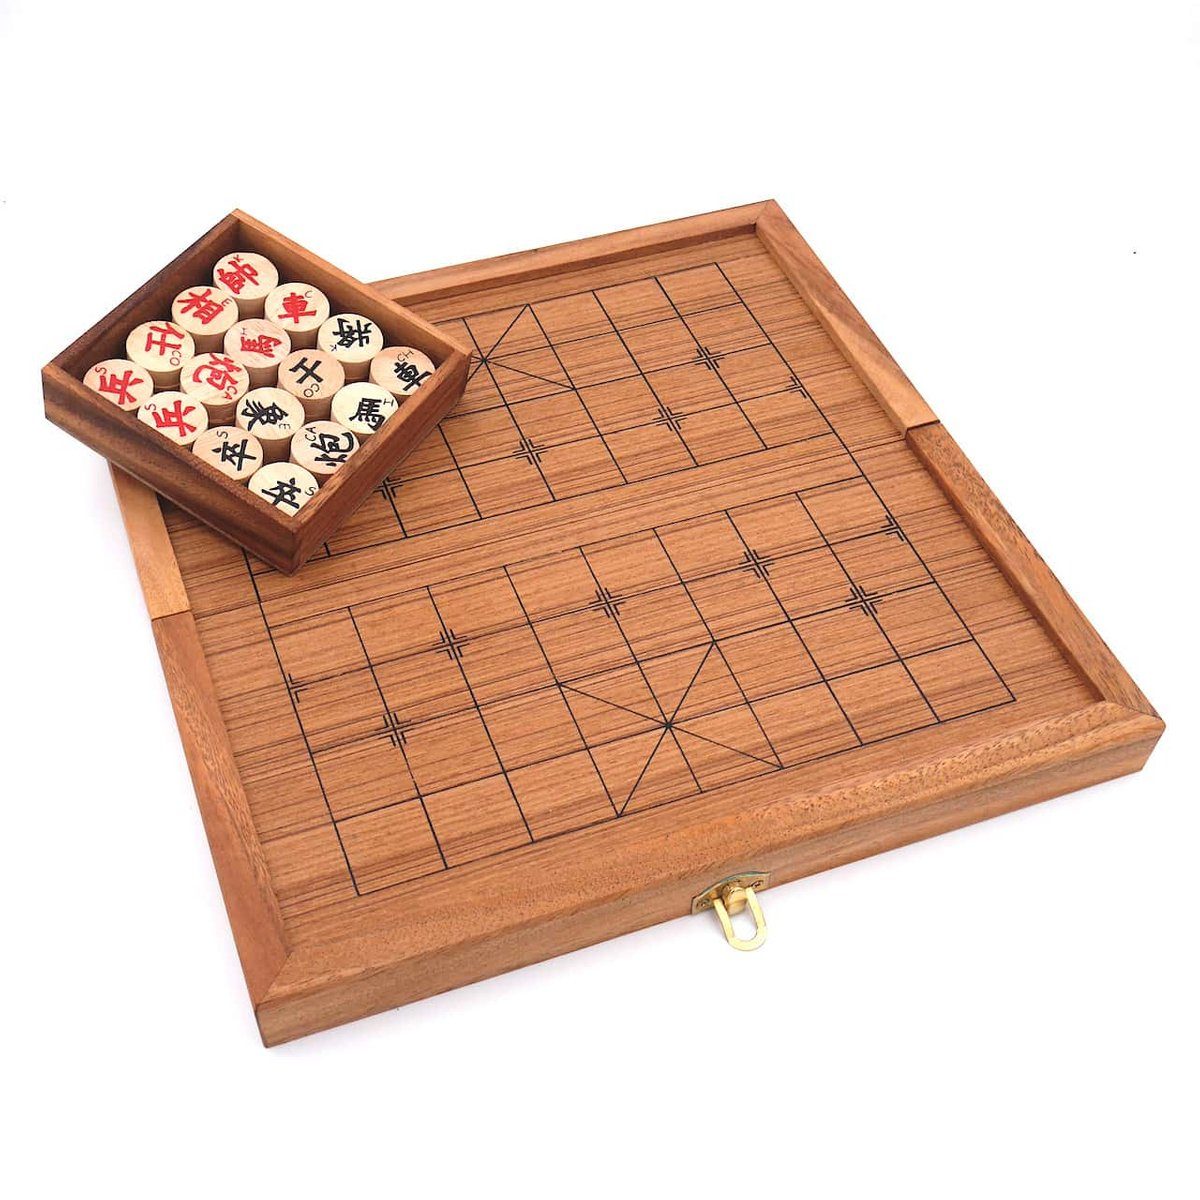 ROMBOL Denkspiele originalen Set chinesisches Strategiespiel Spiel, Holzspiel - mit Xiangqi Holzscheiben, Schachspiel,